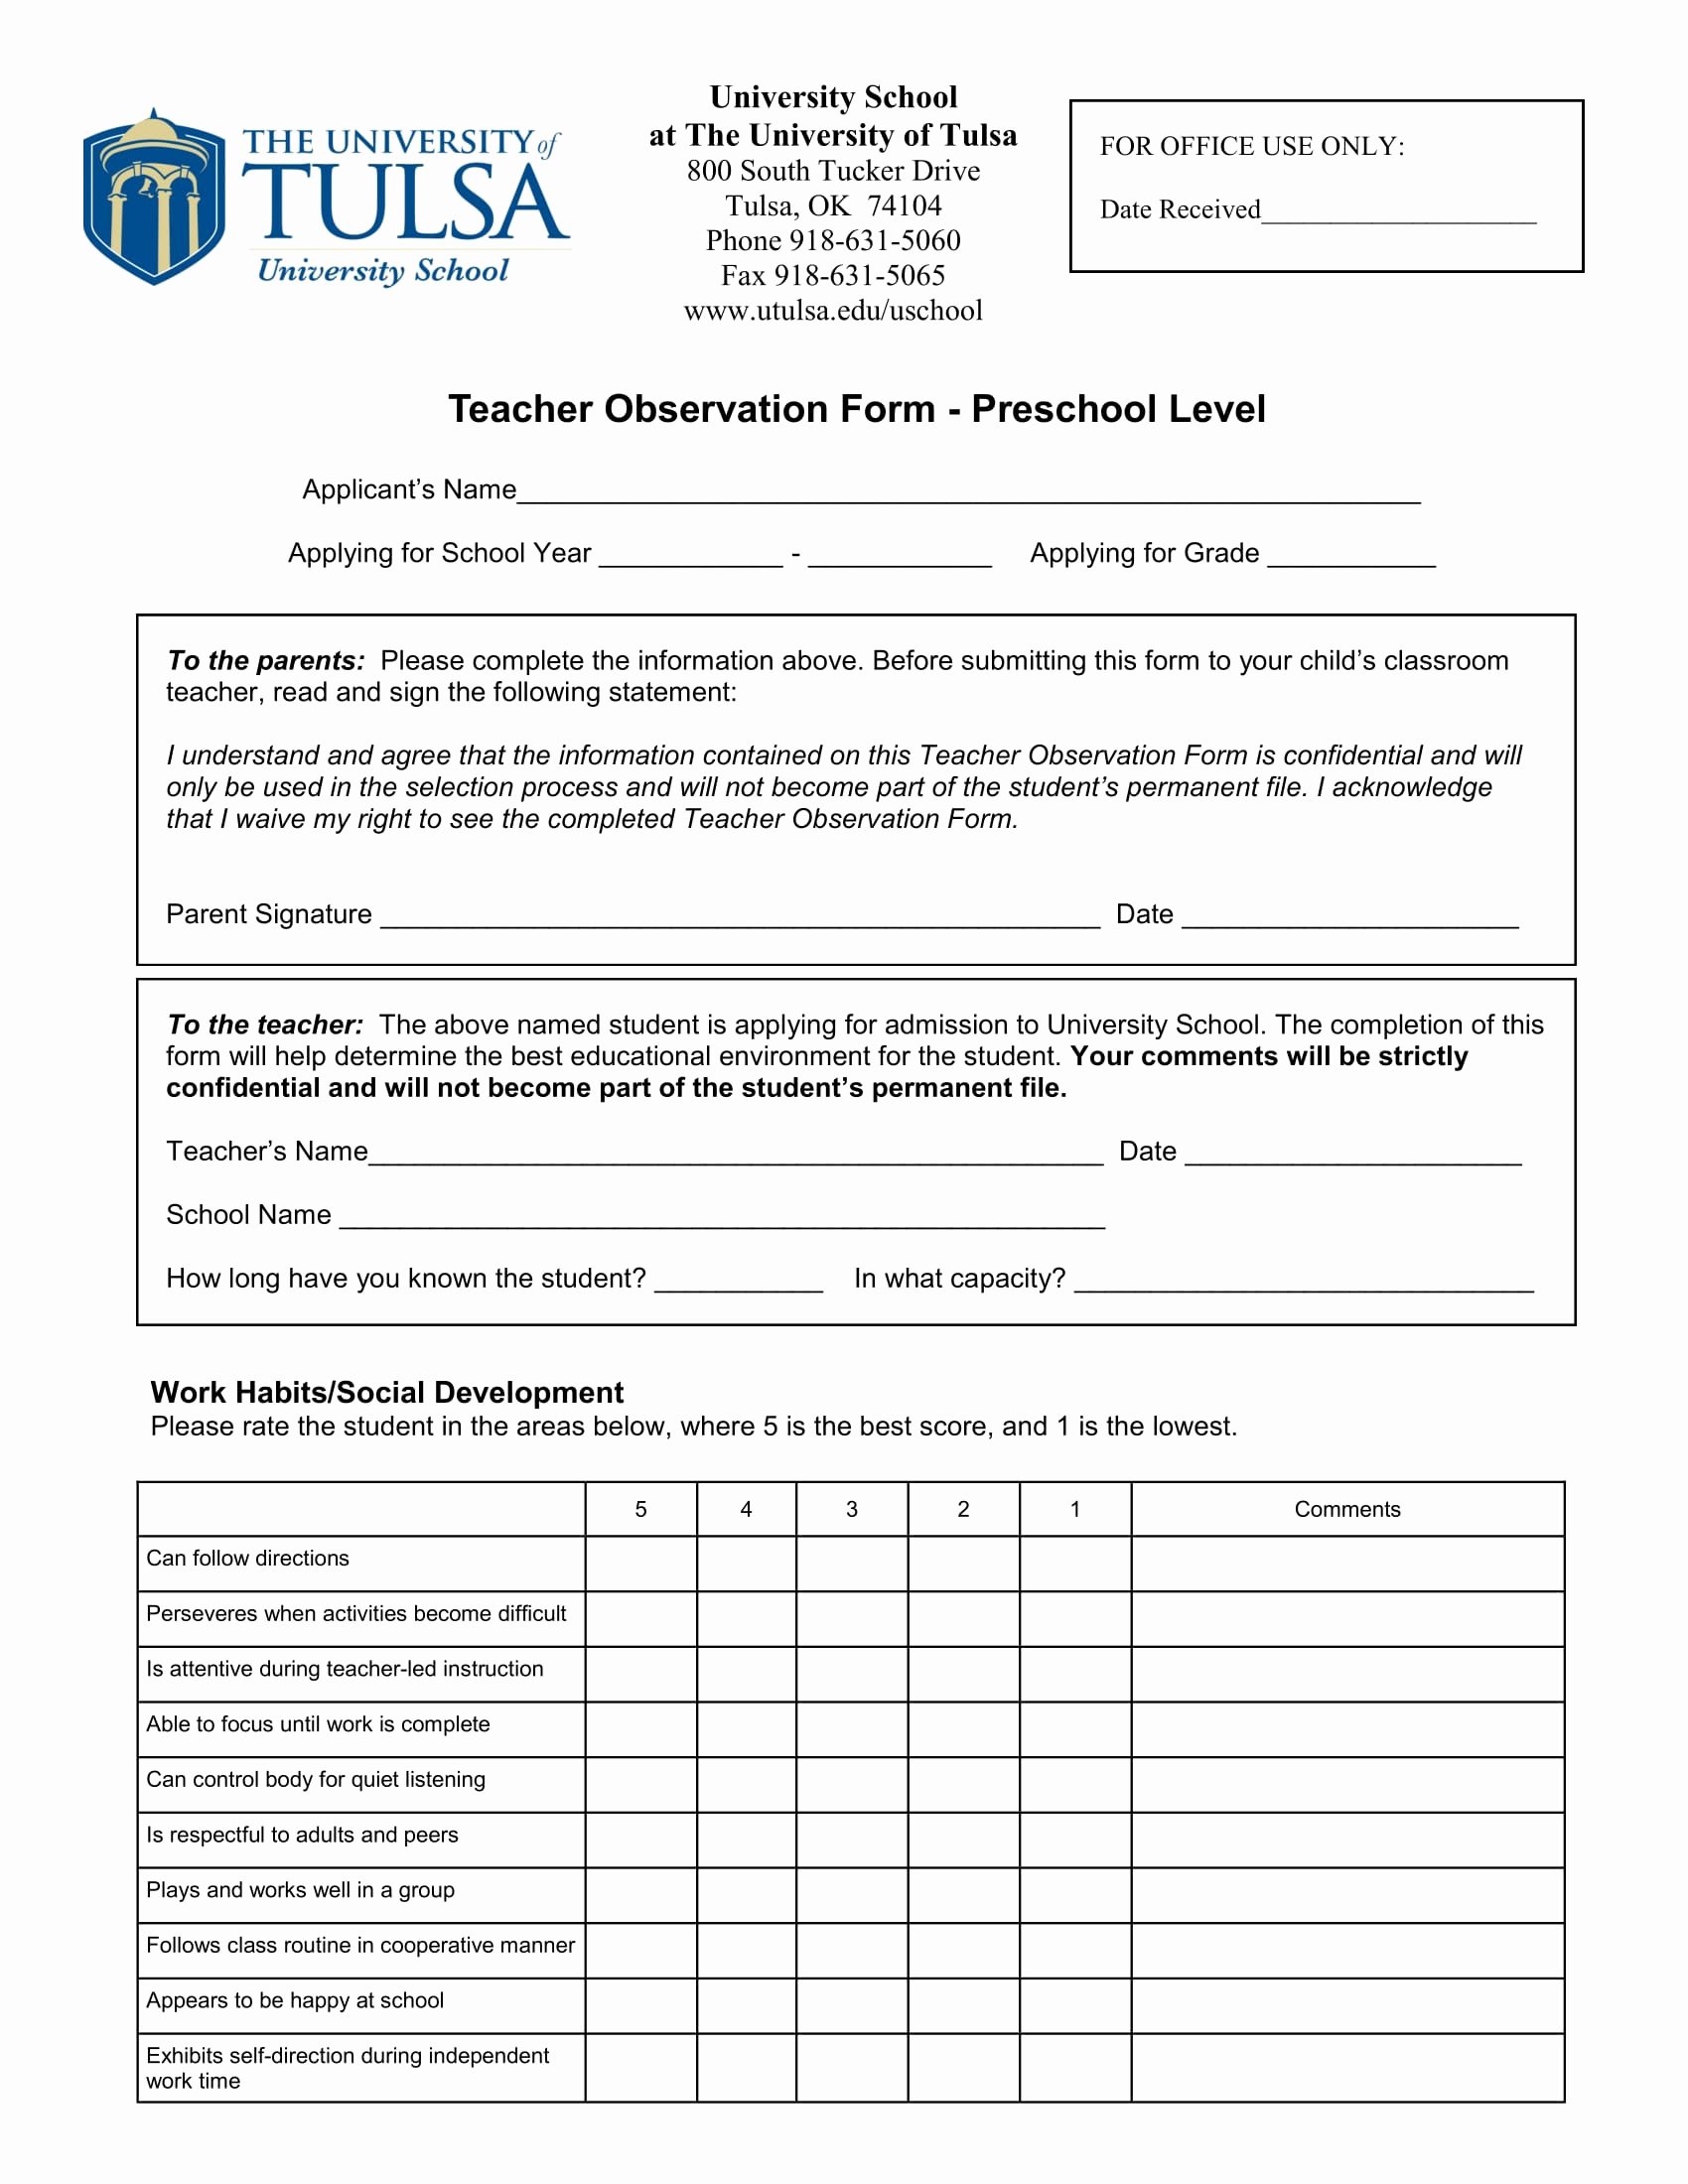 Preschool Teacher Observation form Template Inspirational Free 3 Preschool Observation forms In Pdf